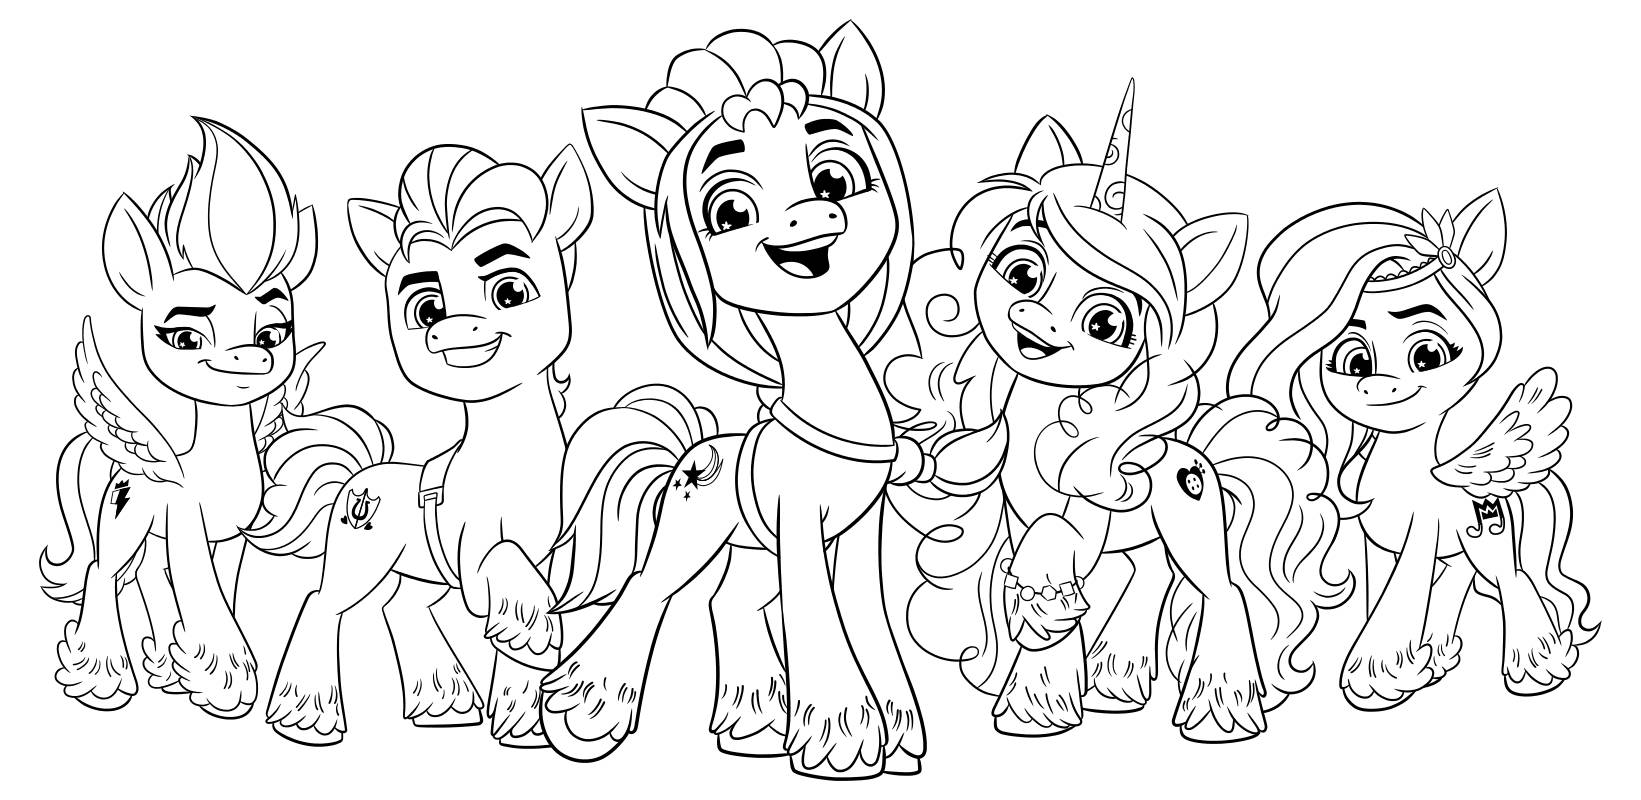 Игра Май маленький пони: раскраски для детей онлайн